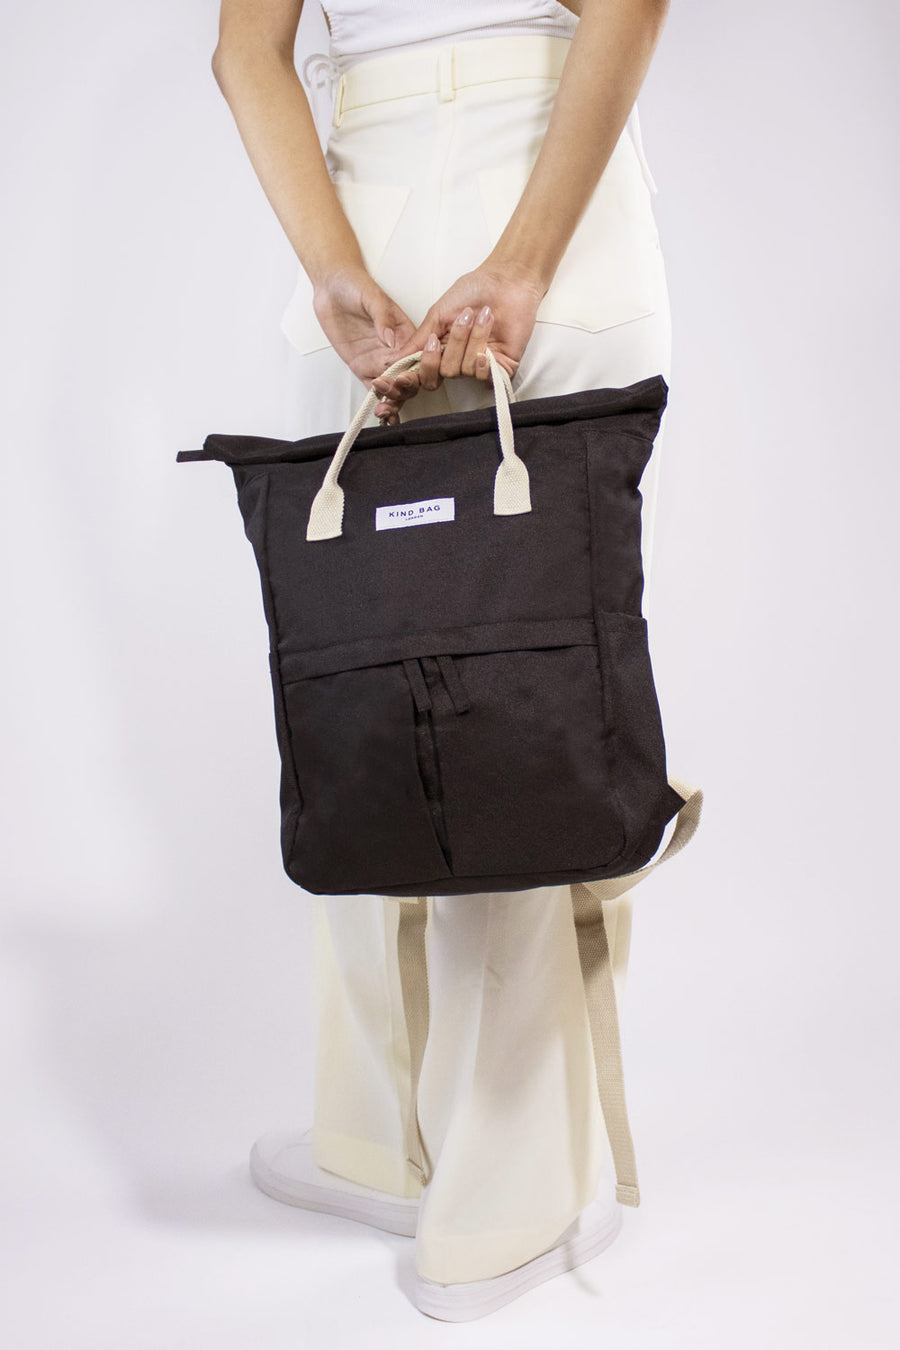 Pebble Black | “Hackney” 2.0 Backpack | Medium